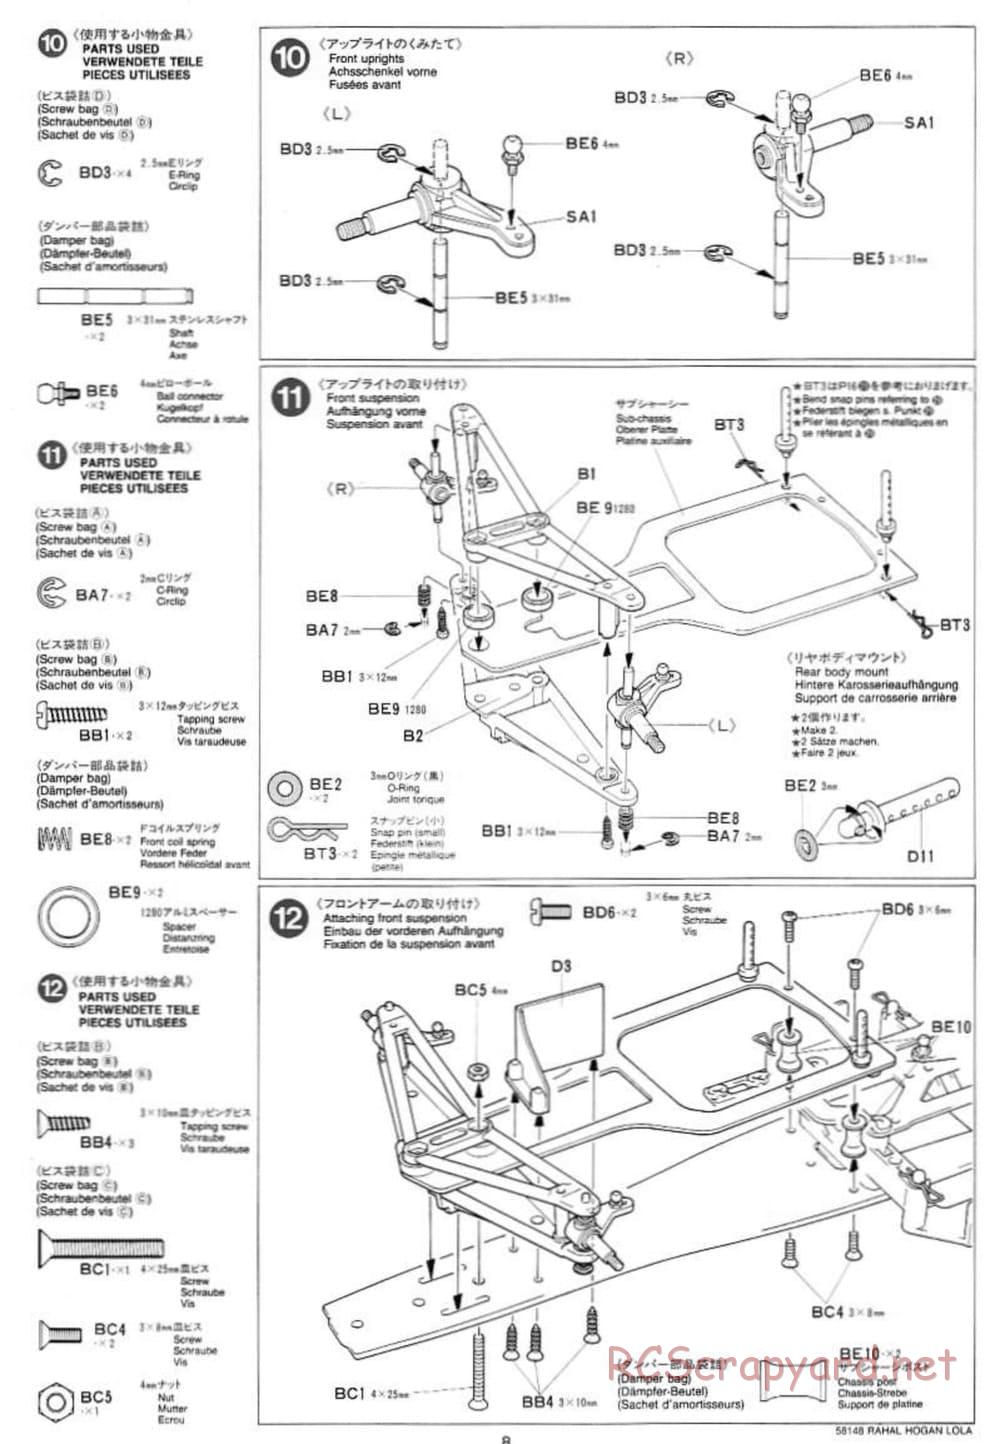 Tamiya - Rahal-Hogan Motorola Lola T94/00 Honda - F103L Chassis - Manual - Page 8